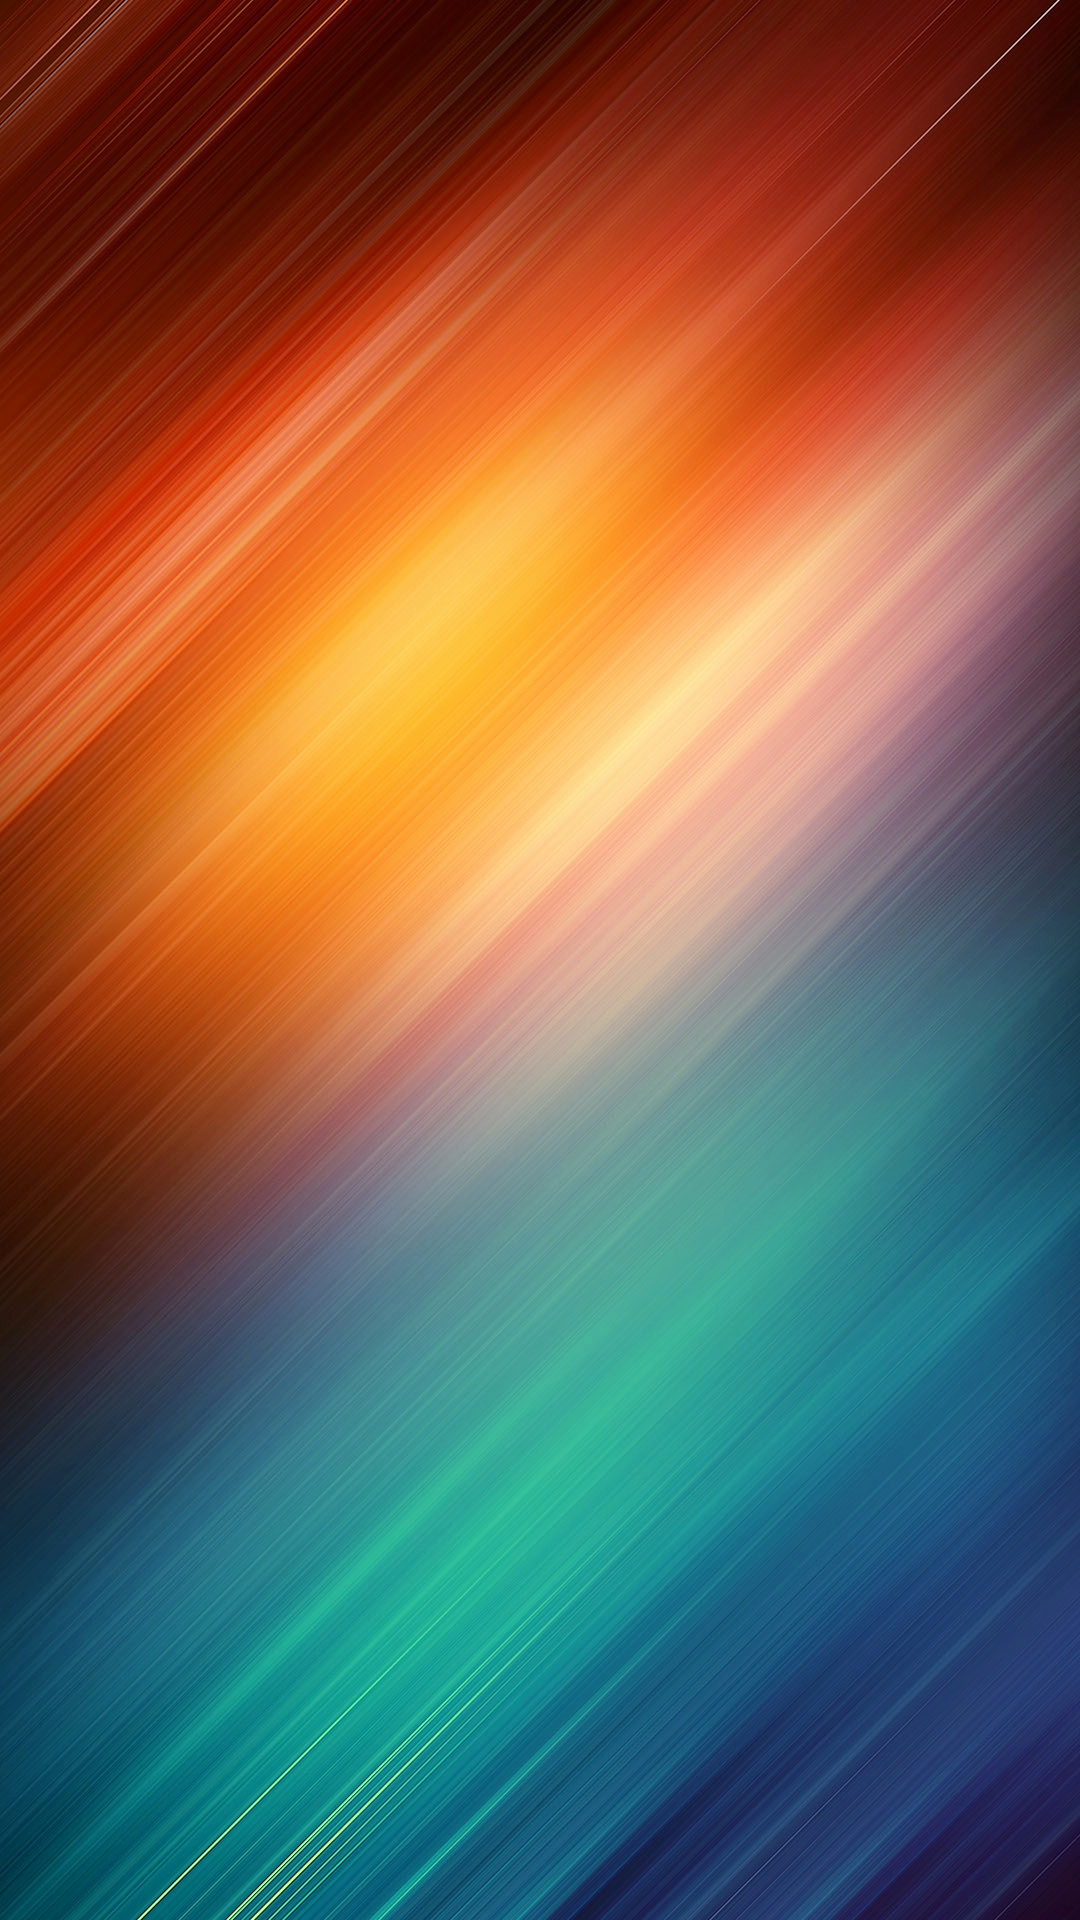 fond d'écran samsung s6 edge,bleu,orange,vert,ciel,rouge